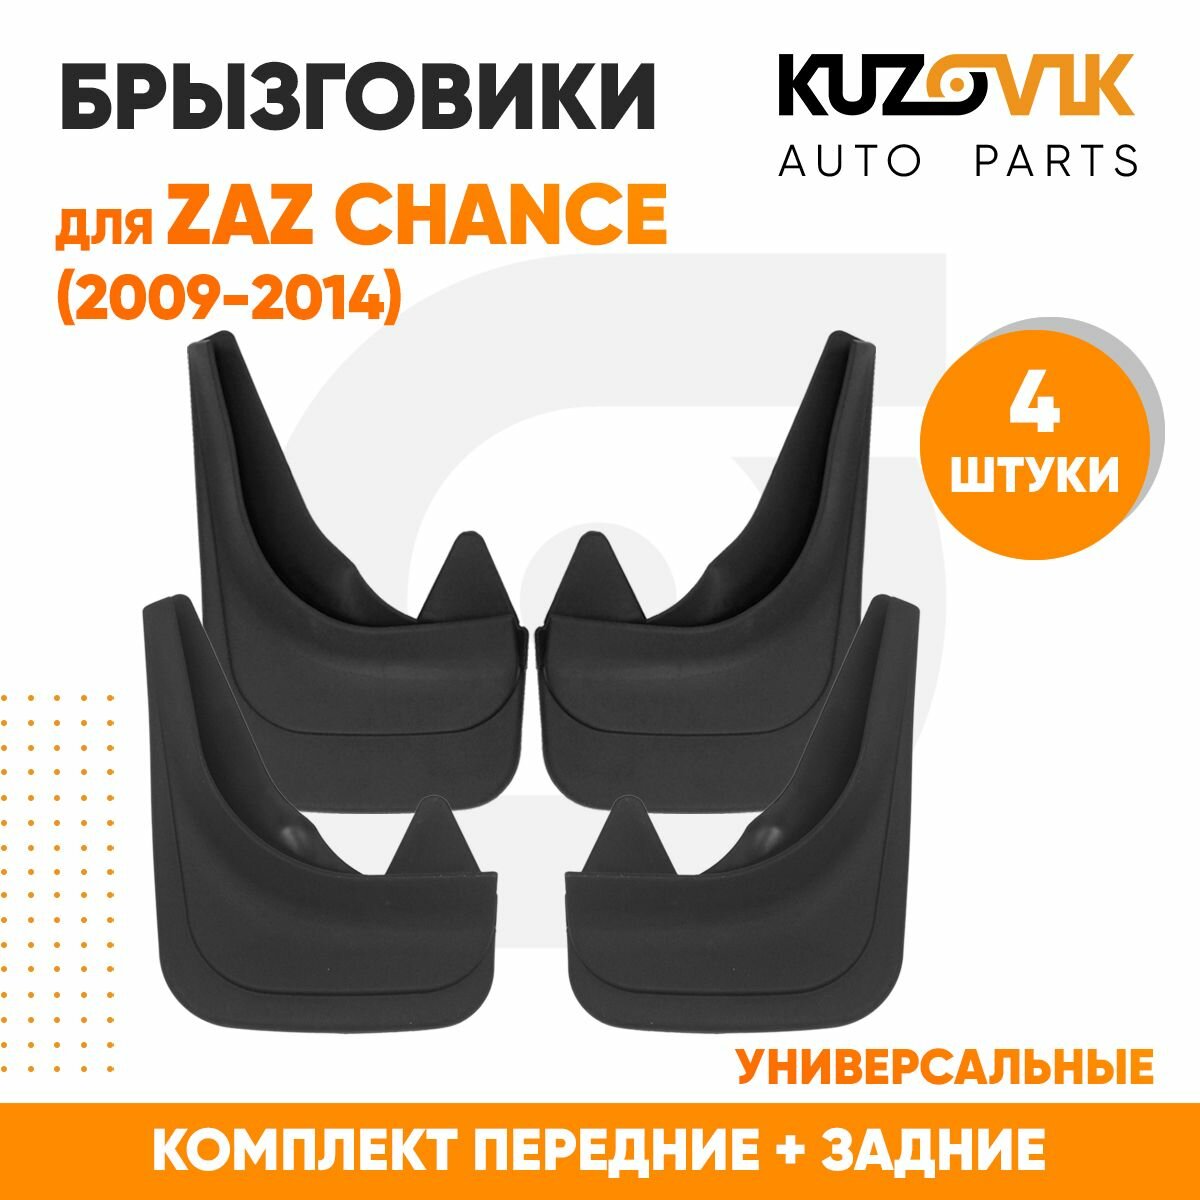 Брызговики универсальные для Заз Шанс ZAZ Chance (2009-2014) передние + задние резиновые комплект 4 штуки